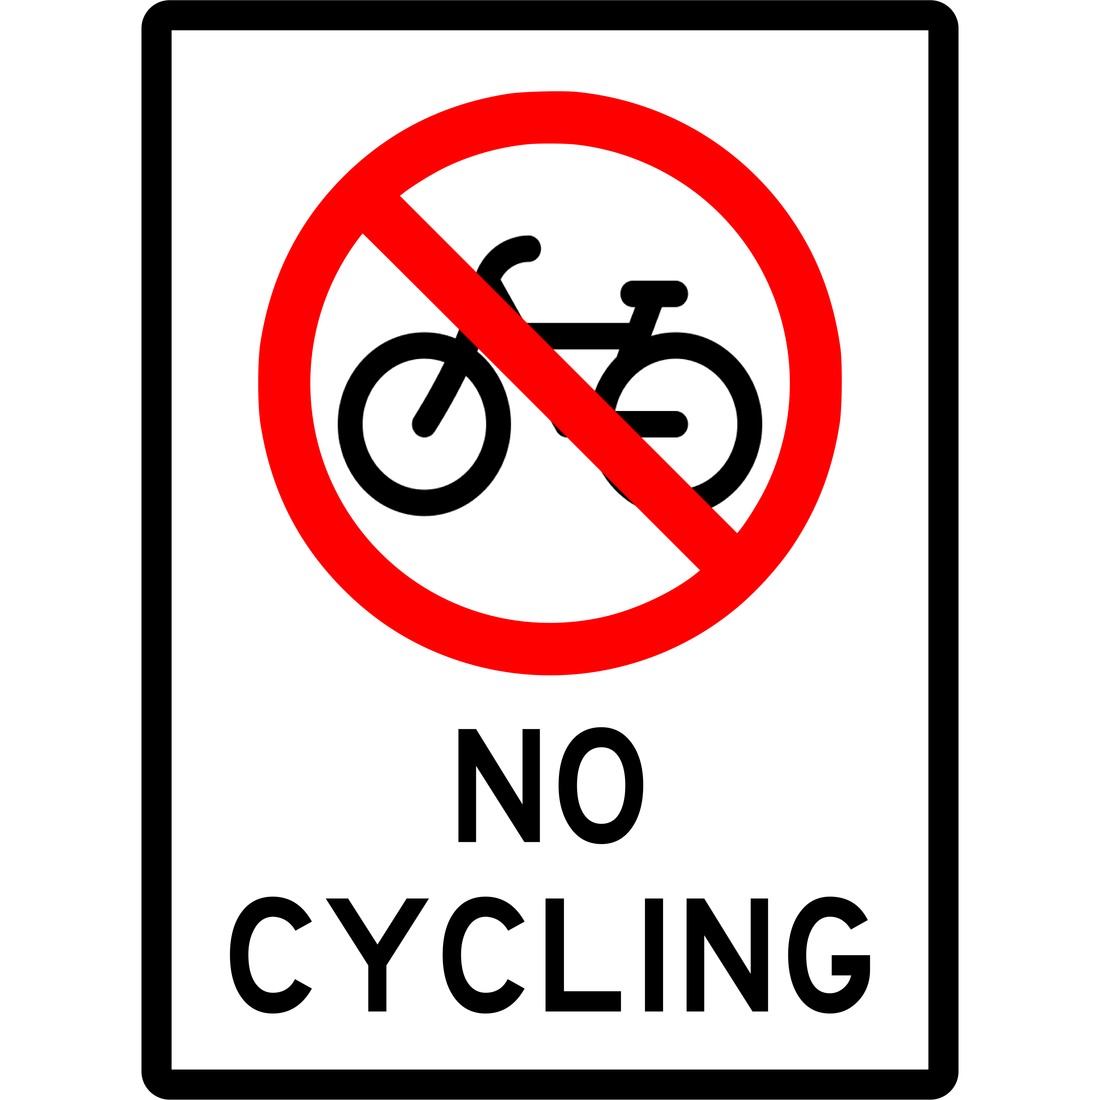 PROHIBITION - NO CYCLING